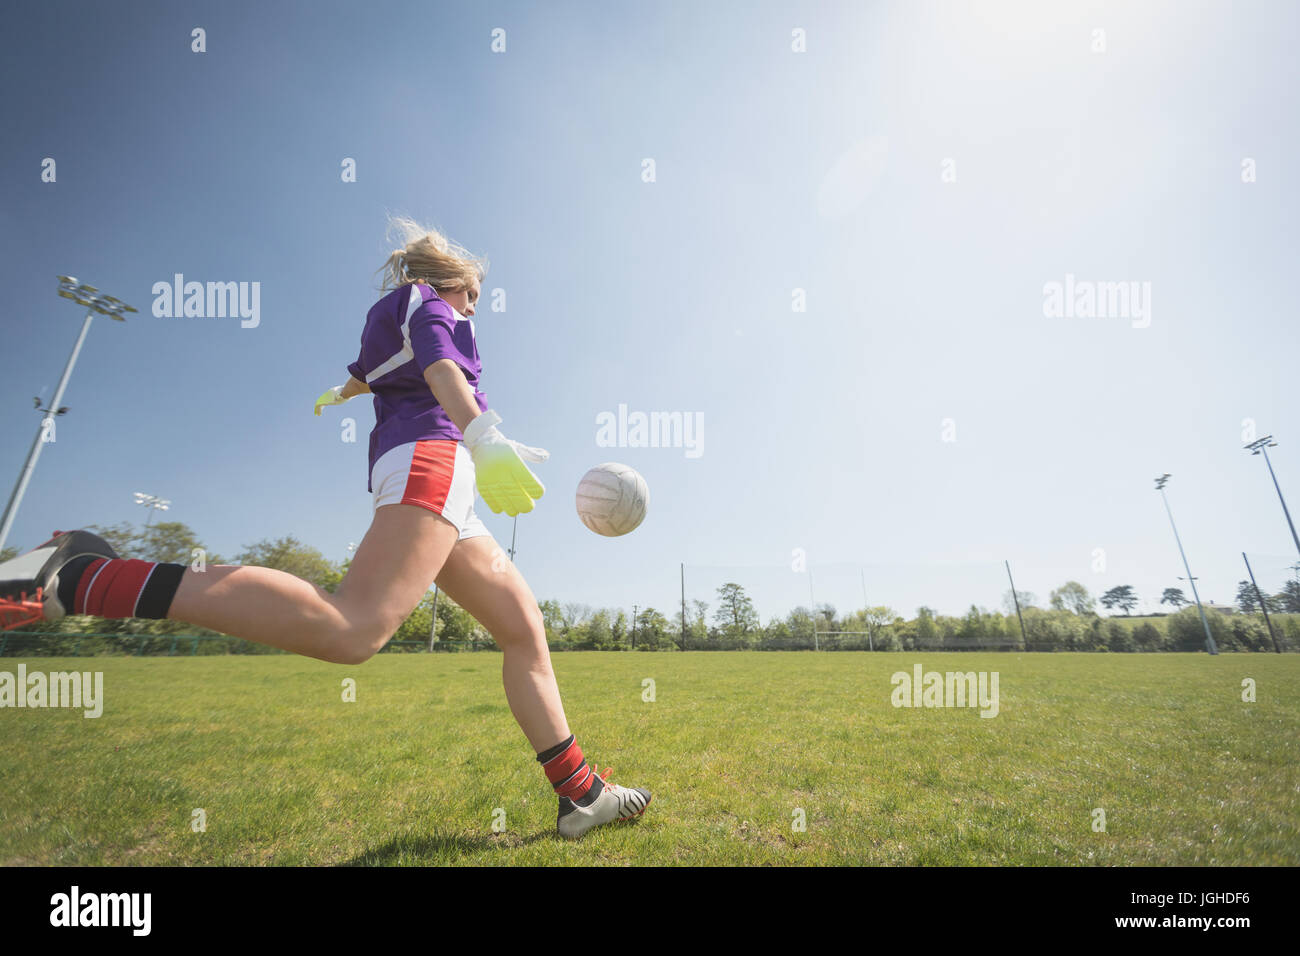 Gesamte Länge der Frau spielen Fußball auf Feld gegen Himmel an sonnigen Tag Stockfoto